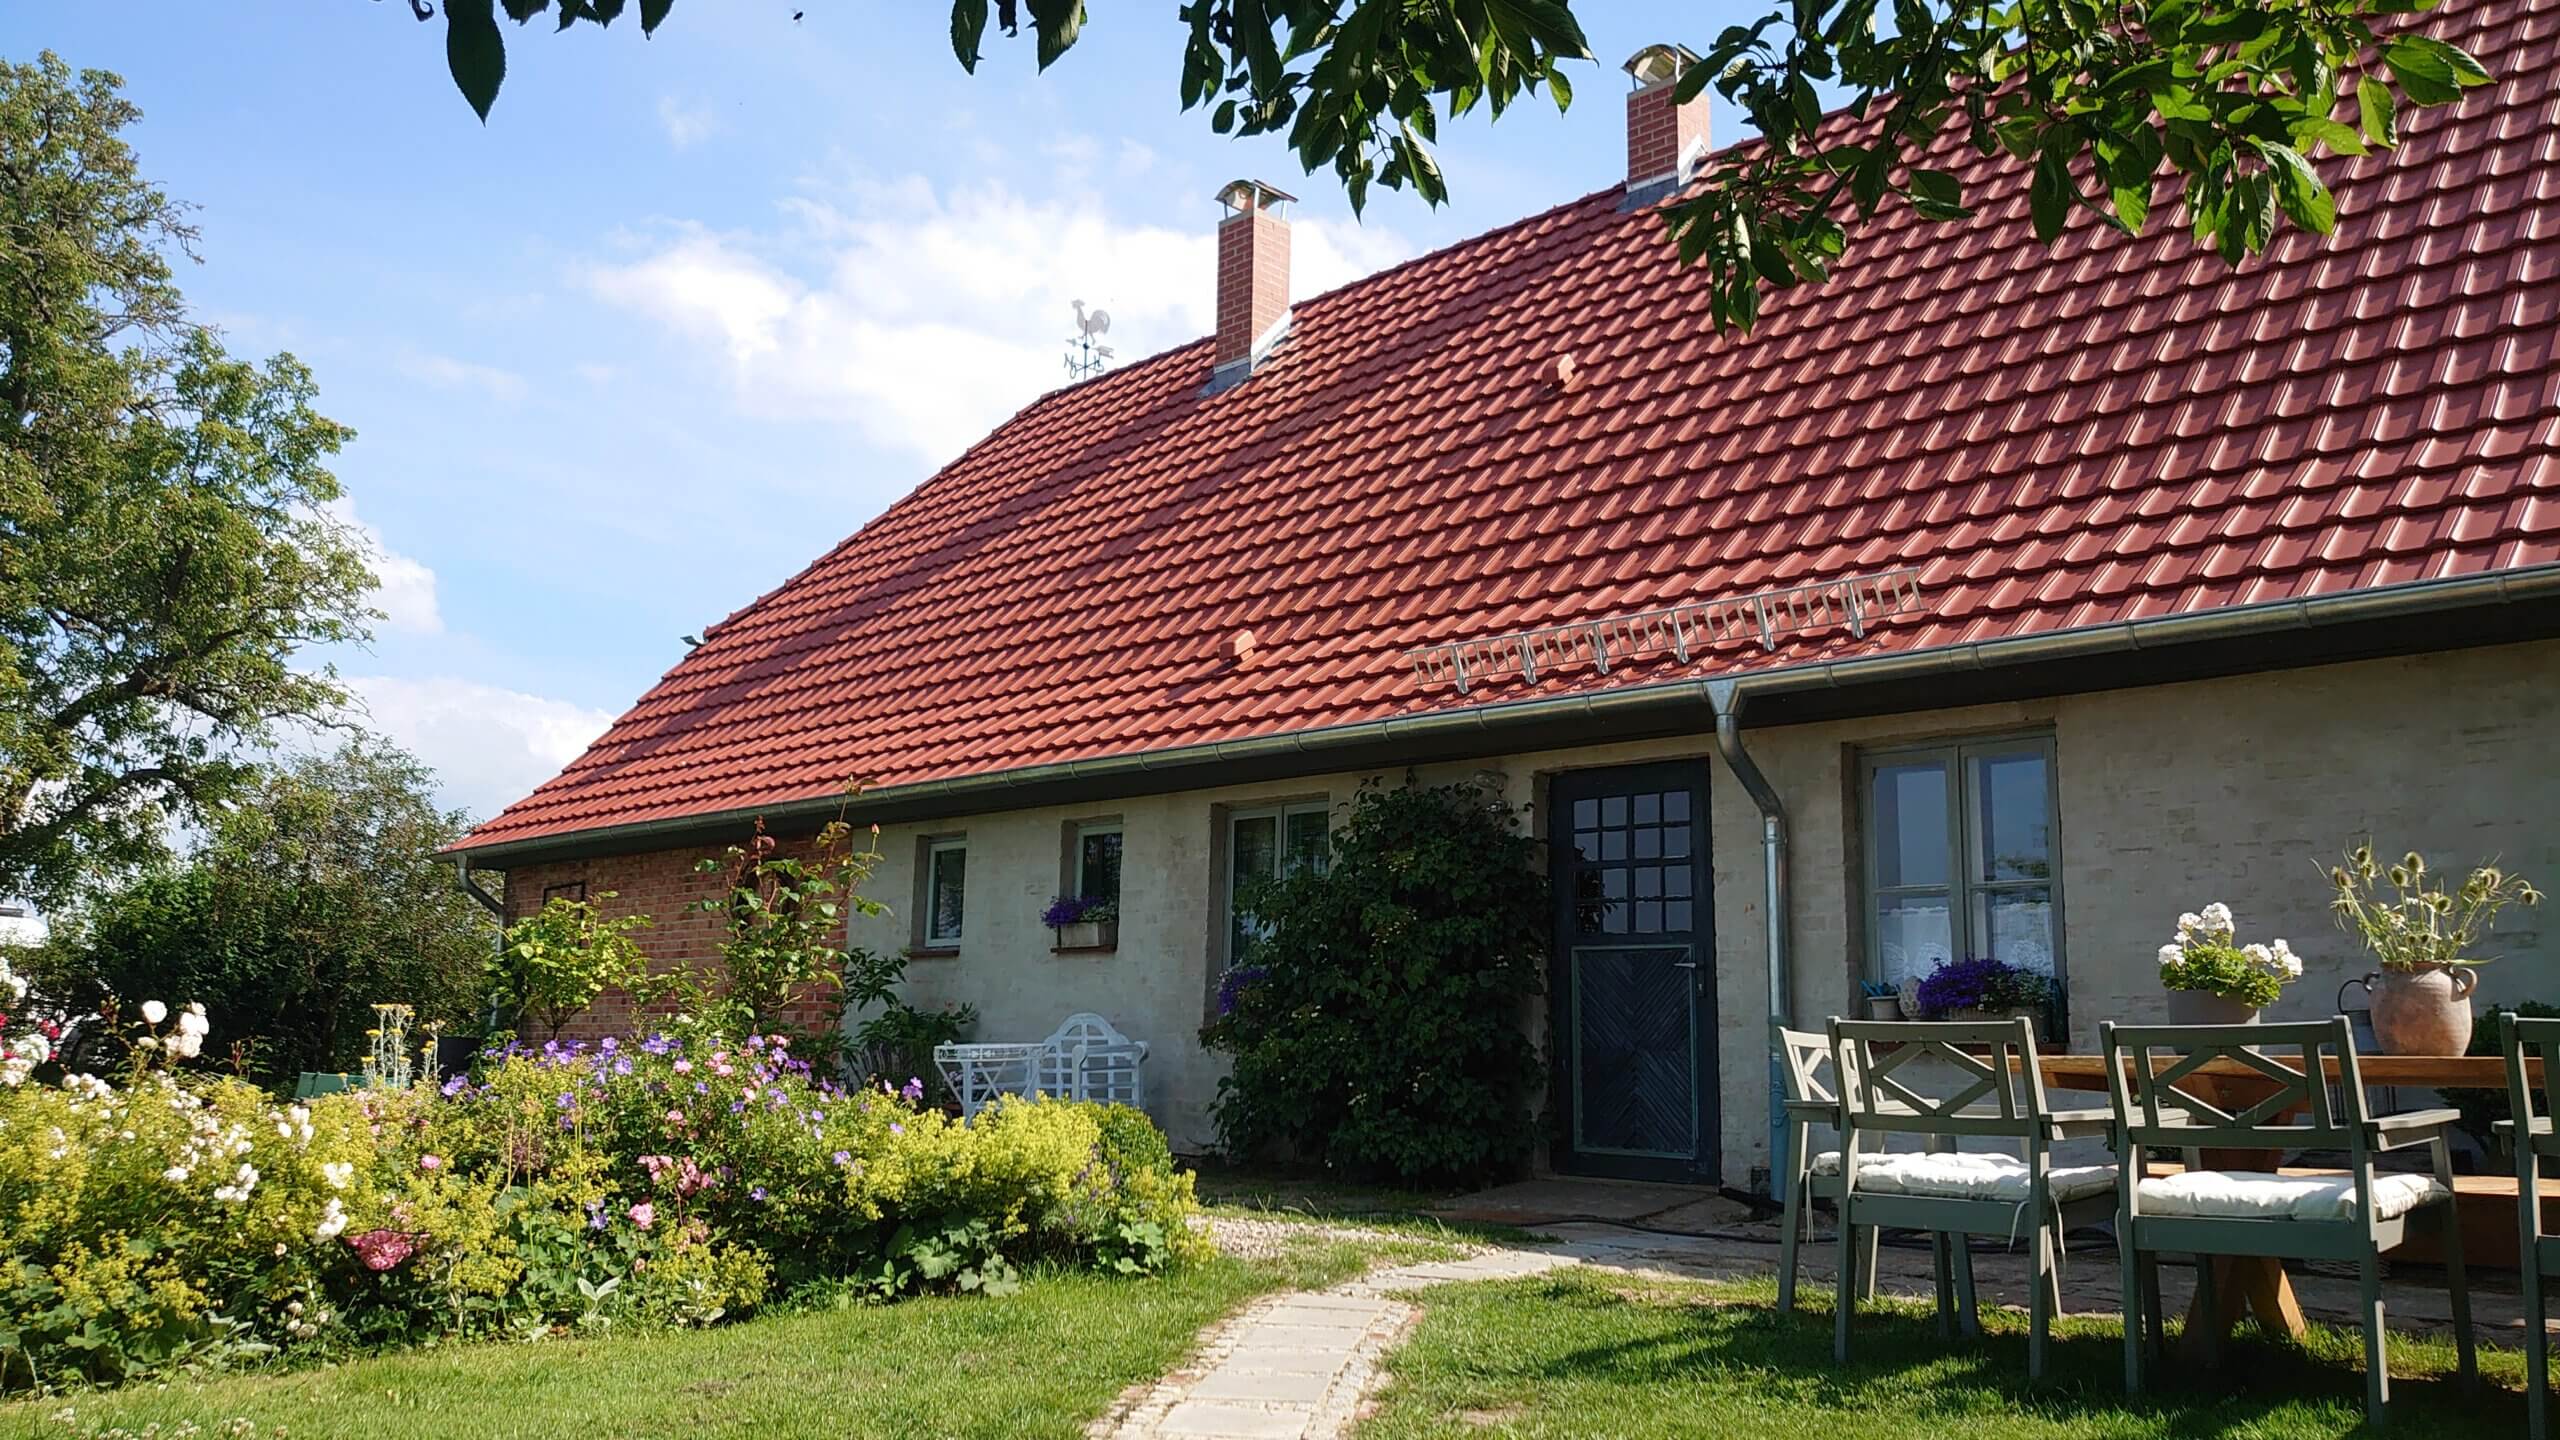 Landhaus Gutleben in Saal an der Ostsee